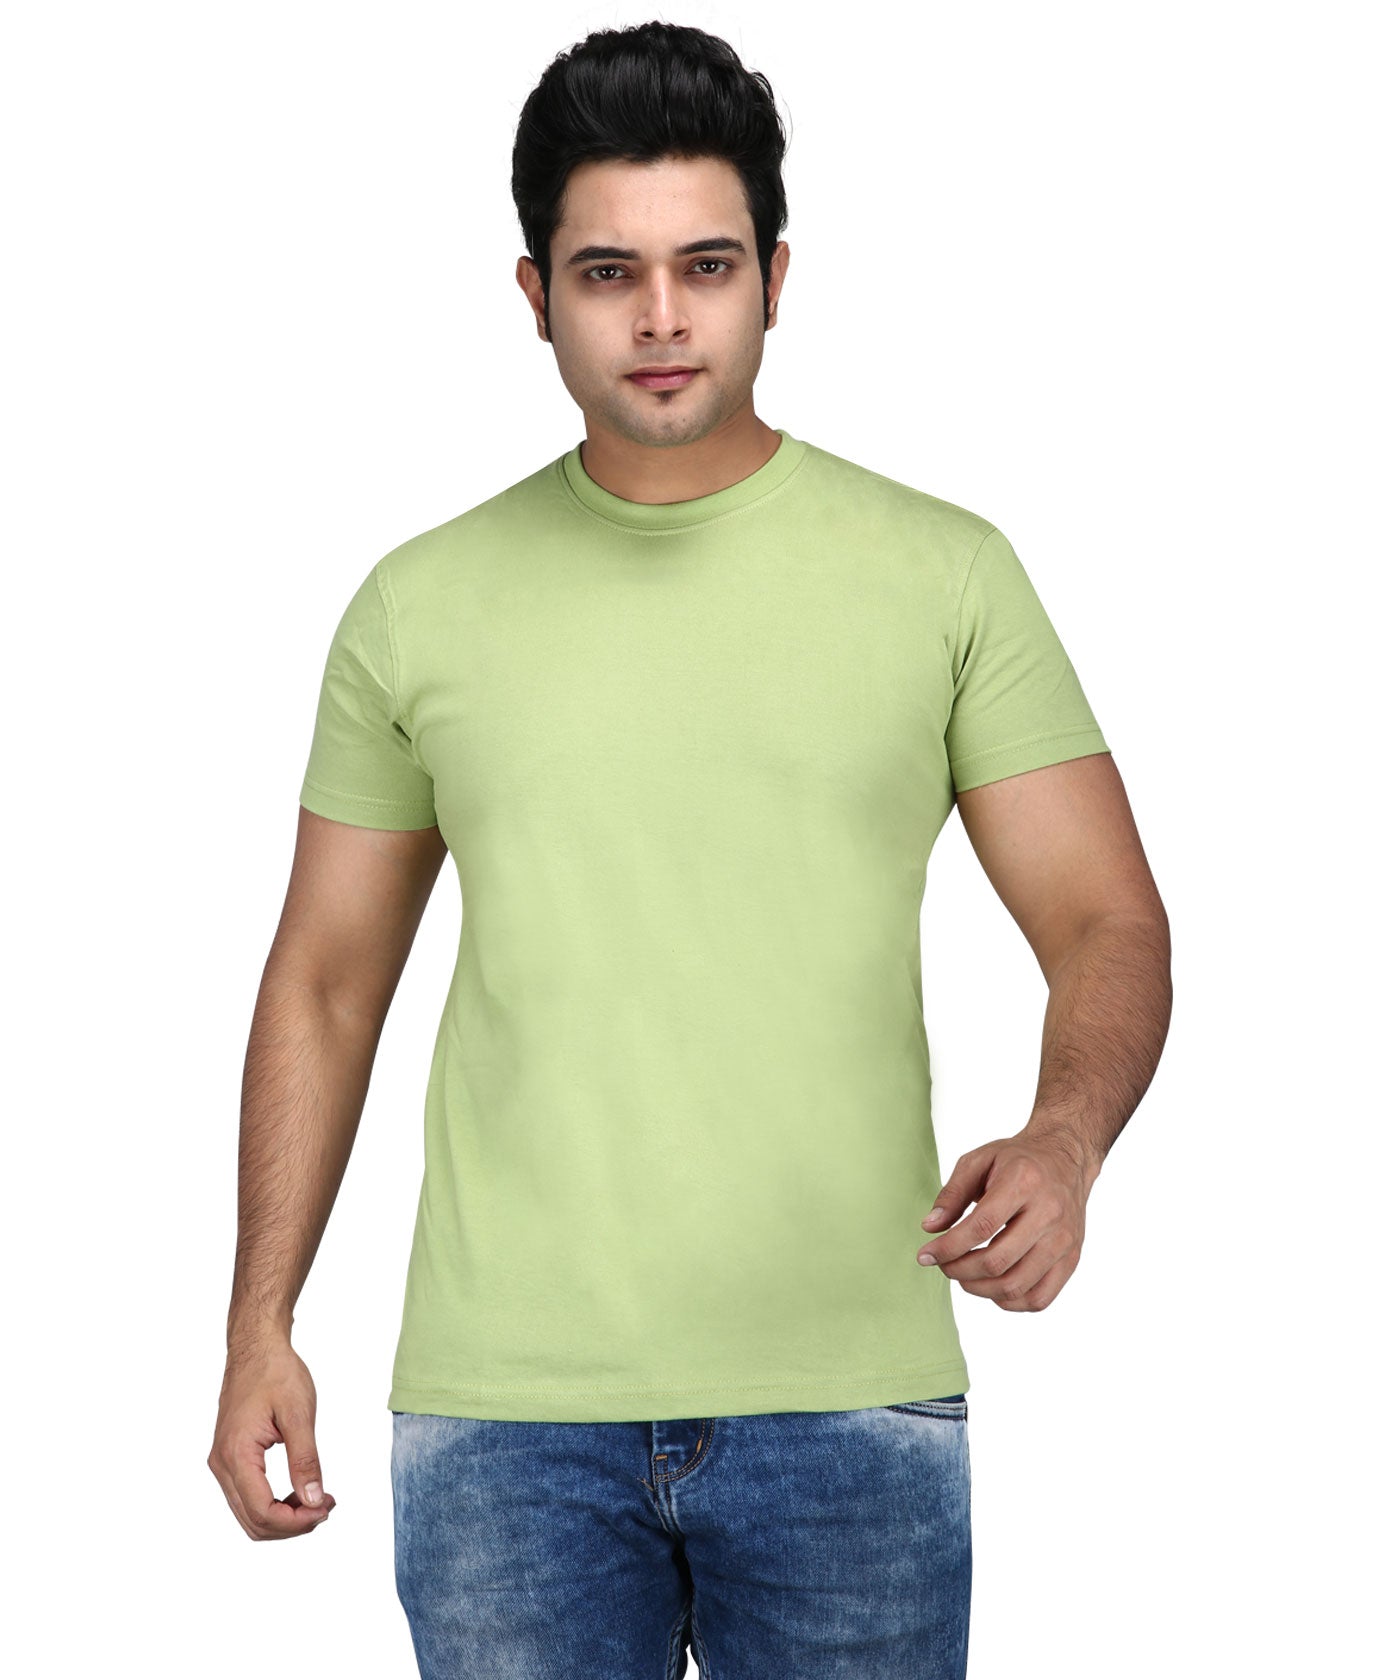 Premium Plain 100% Cotton Tees For Men - Parrot Green